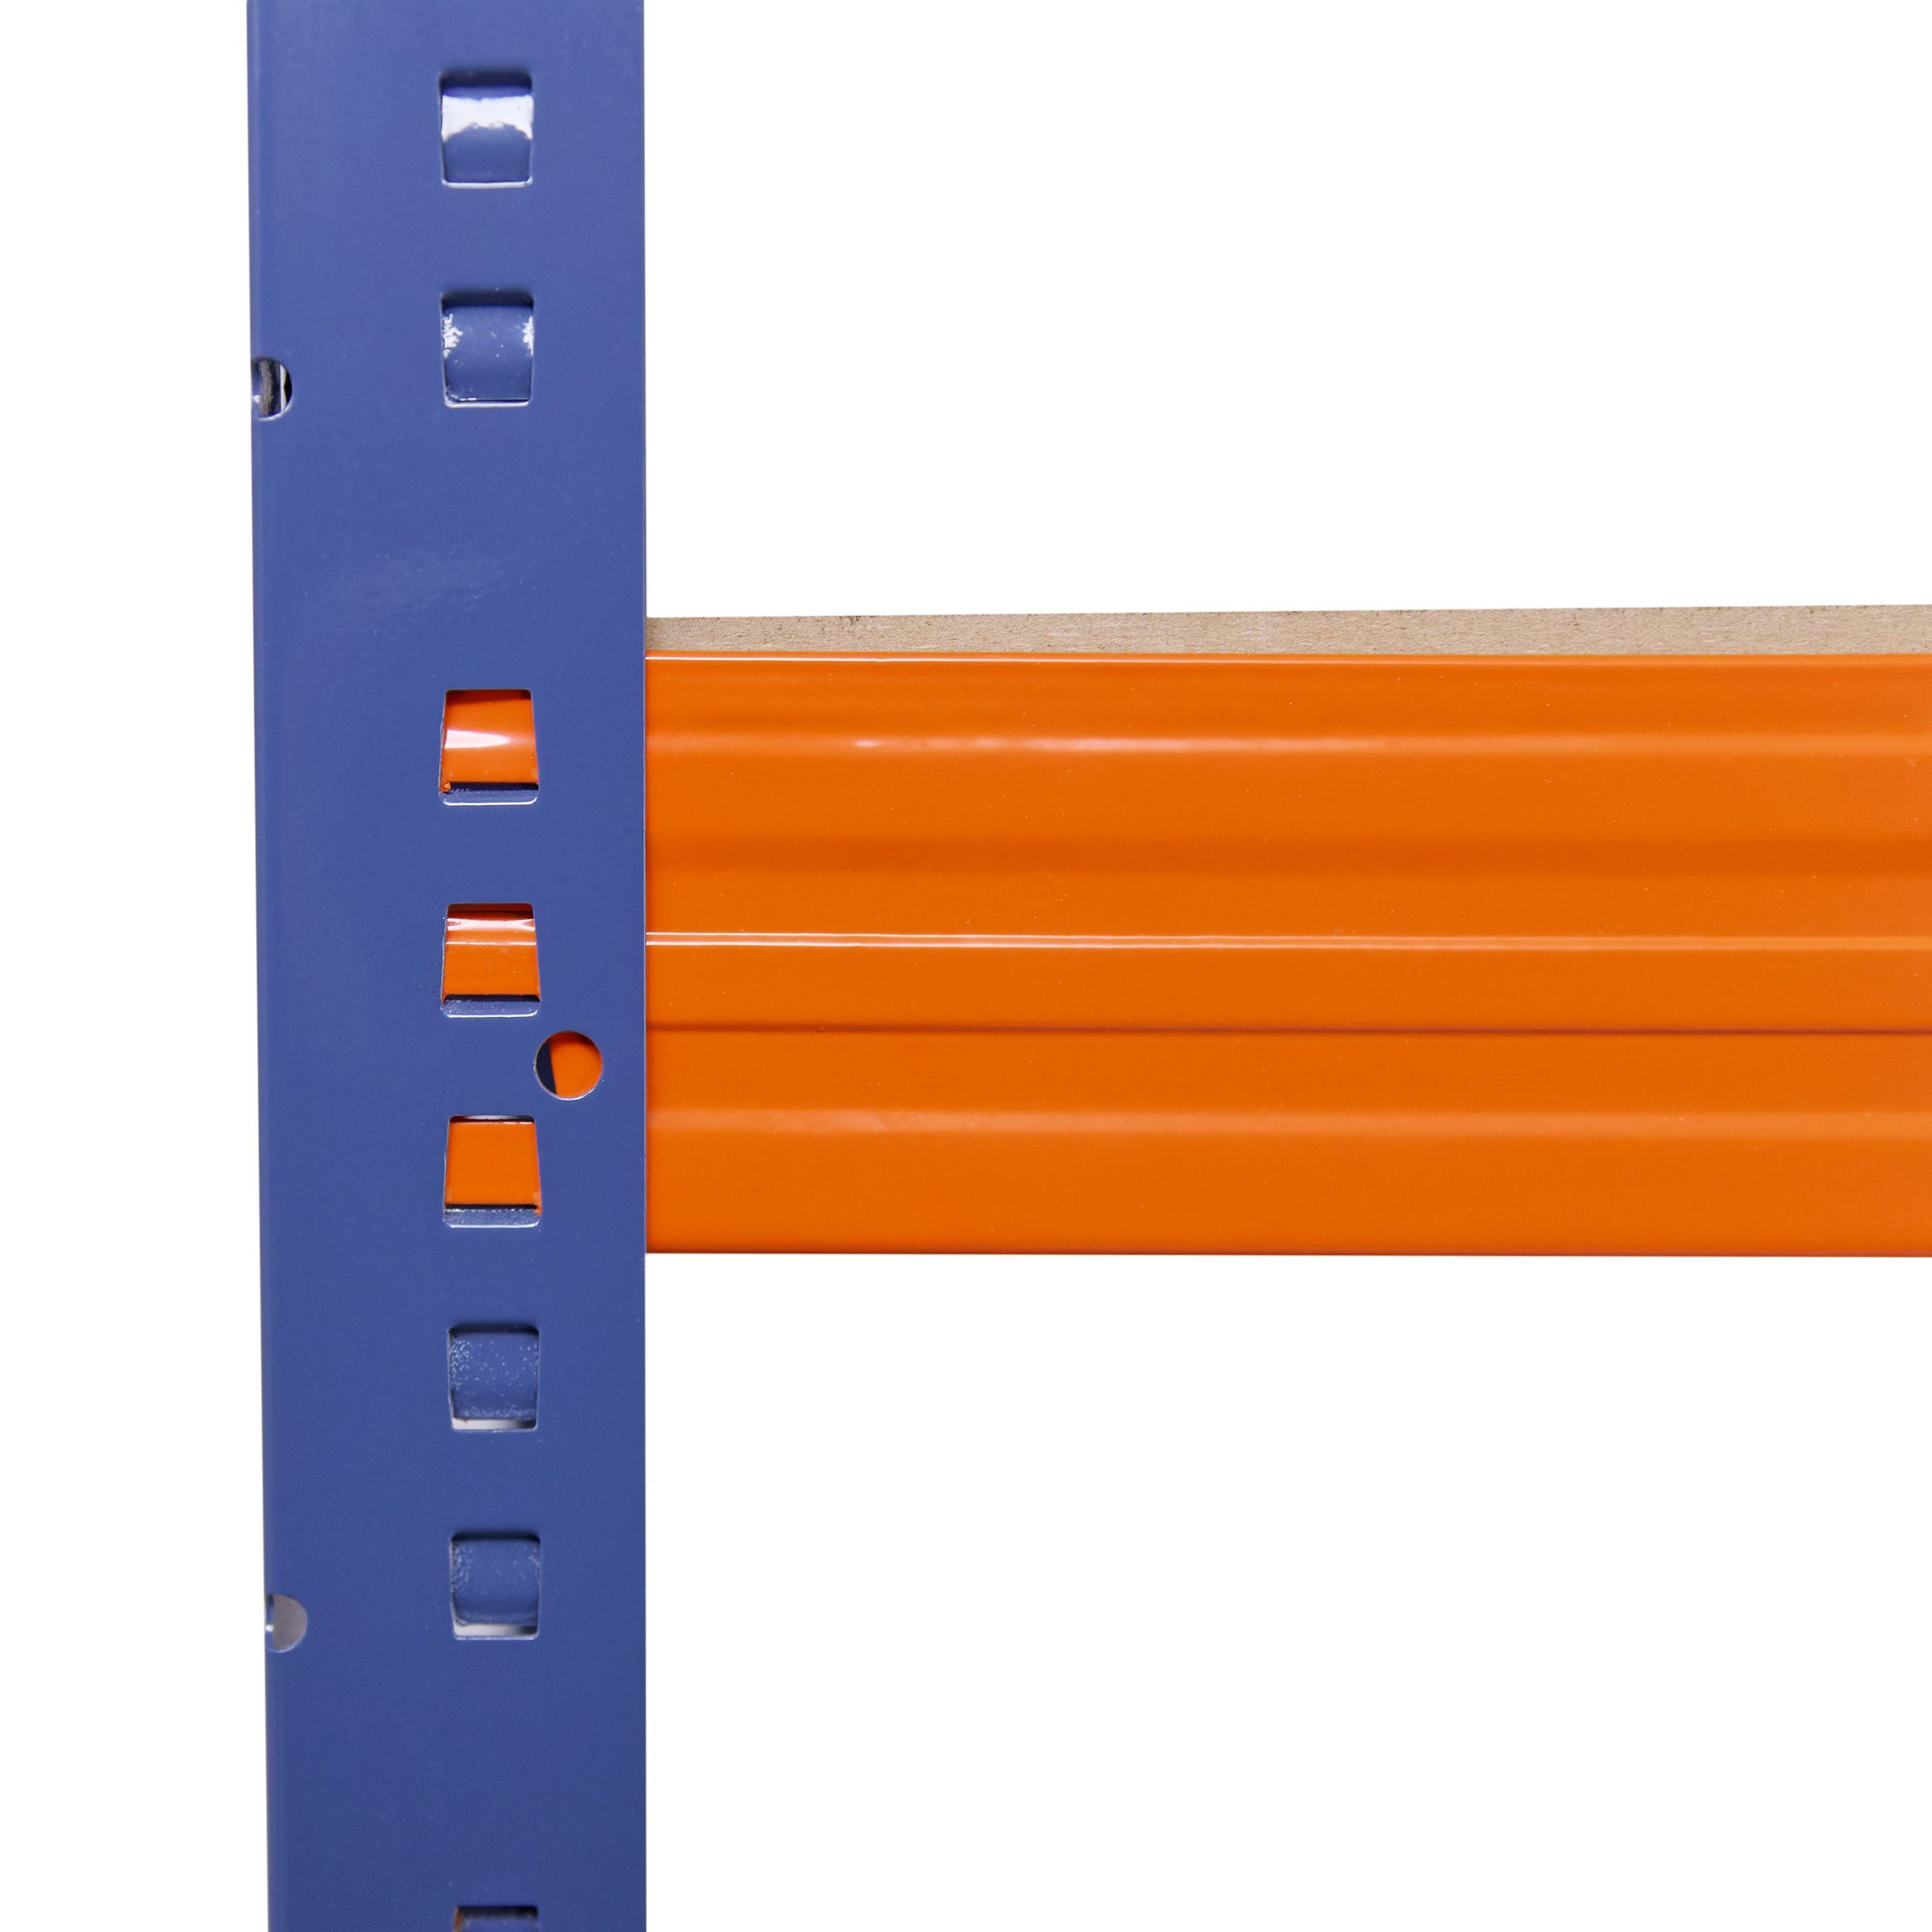 Werkstattregal als Regal PROFI, je mit 180x60x30cm shelfplaza Steckregal Kellerregal, Metallregal Metall Lagerregal, Schwerlastregal Garagenregal, blau-orange, Böden Tragkraft, 200kg 5 & Regale